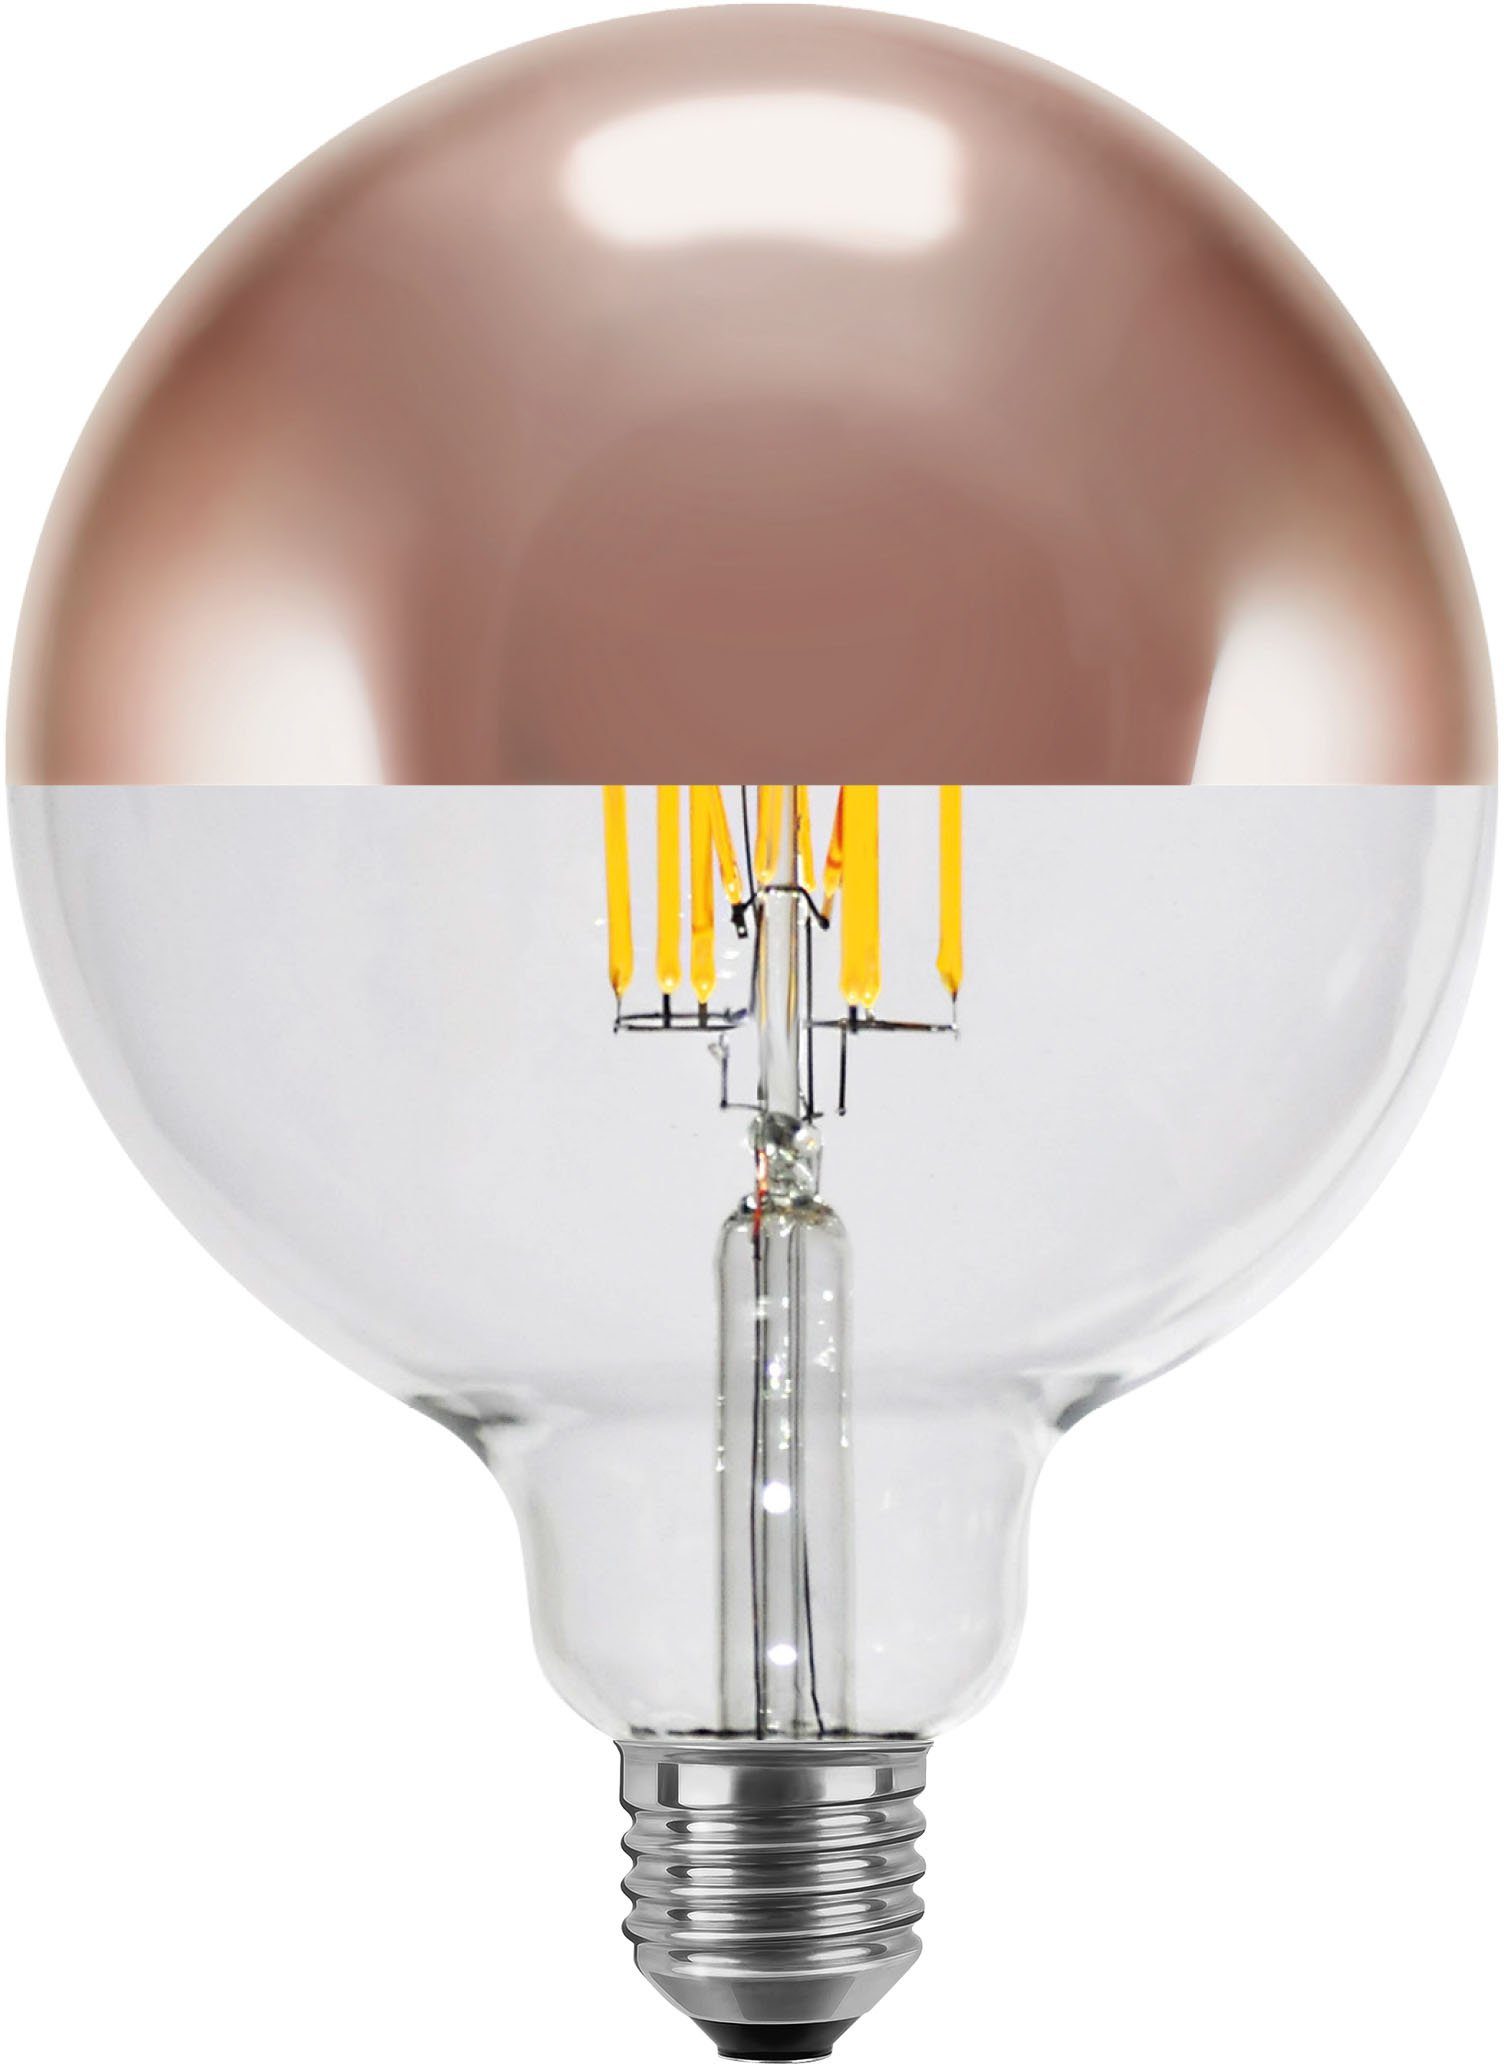 SEGULA LED-Leuchtmittel LED Globe 125 Spiegelkopf Kupfer, E27, Warmweiß, dimmbar, E27, Globe 125 Spiegelkopf Kupfer, 2700K